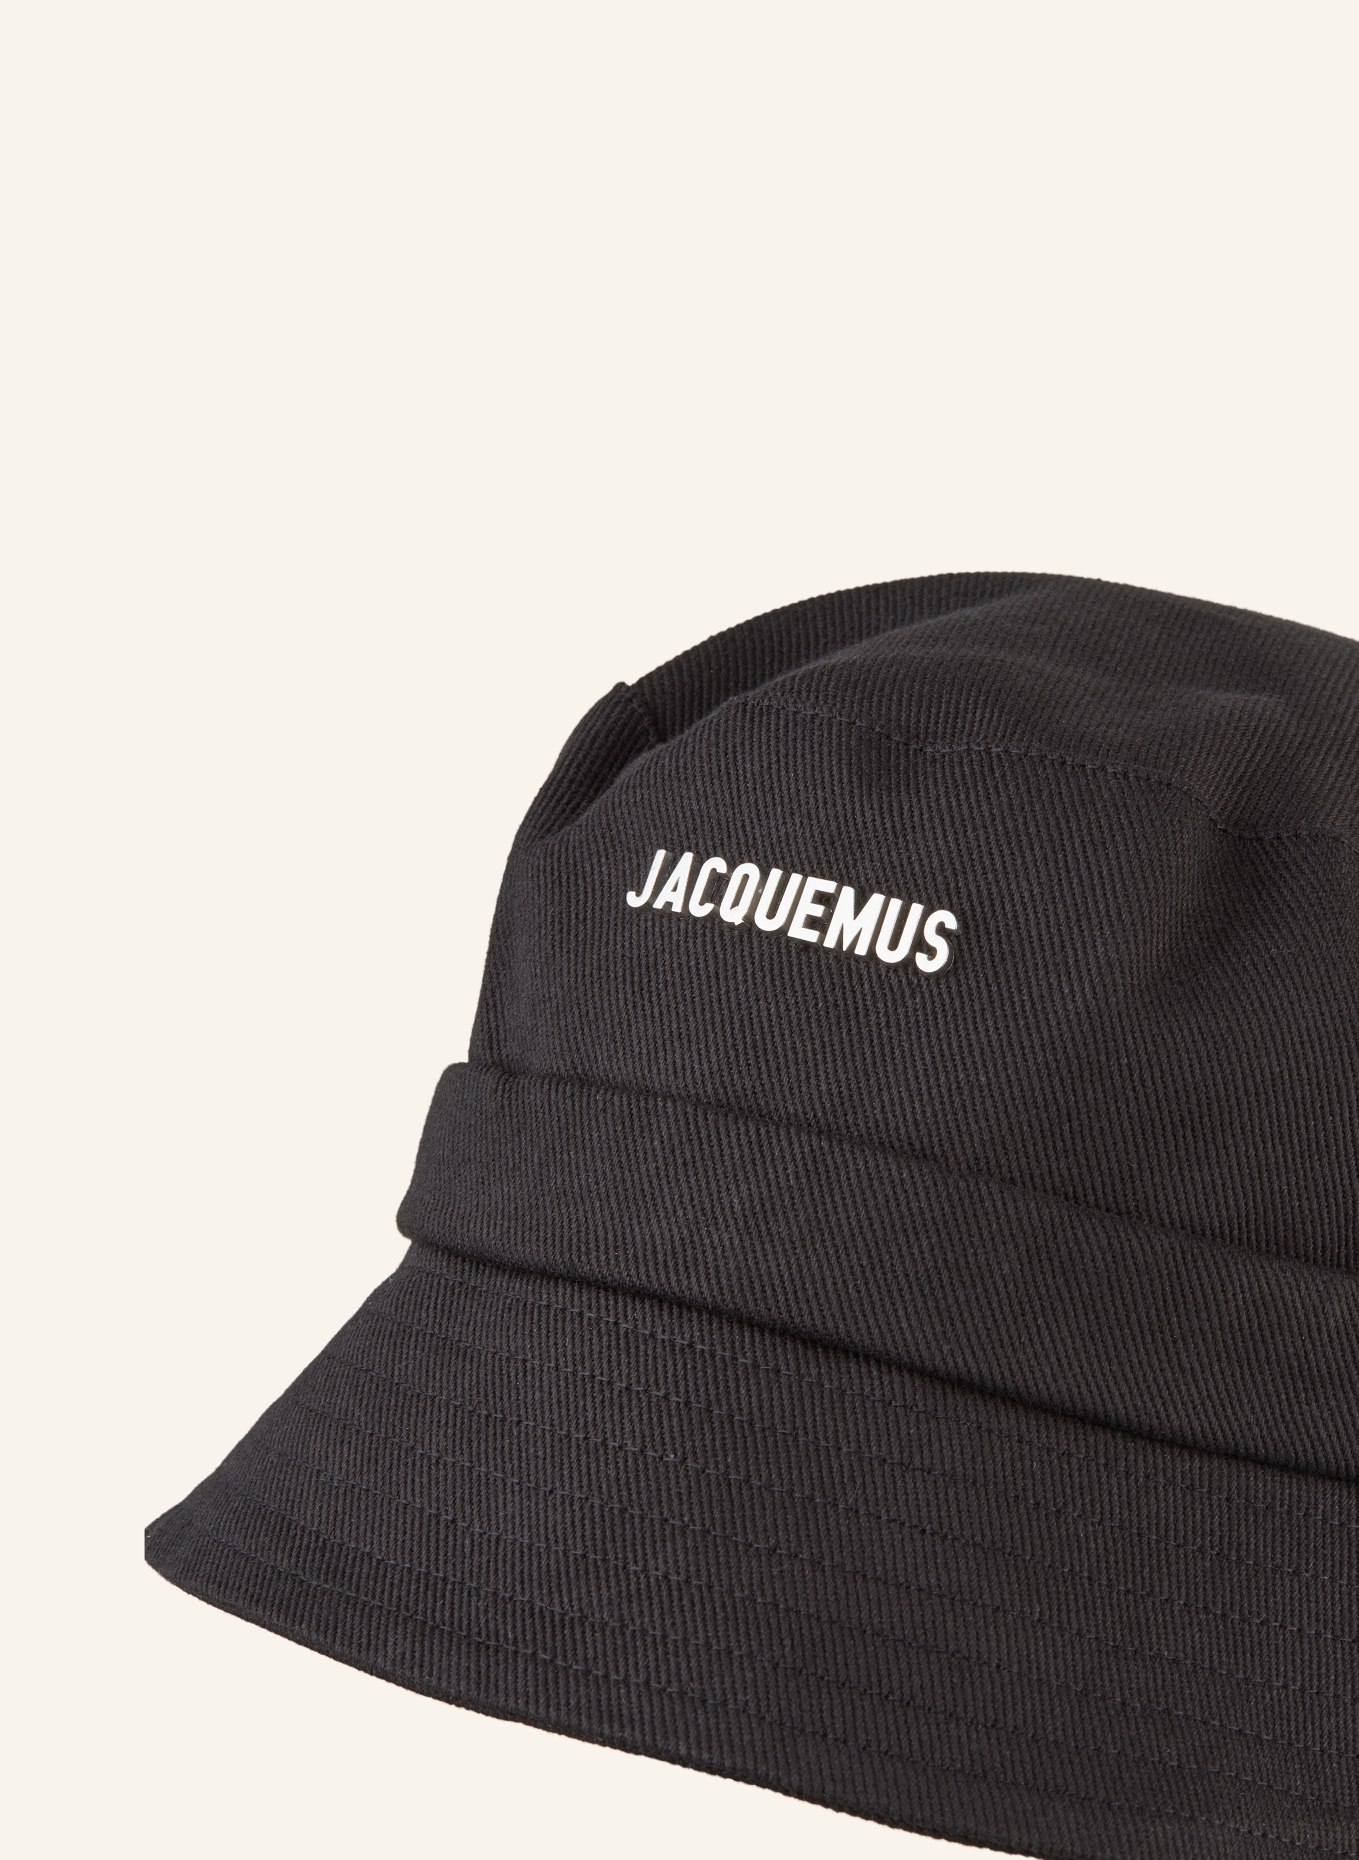 JACQUEMUS Bucket hat, Color: BLACK (Image 3)